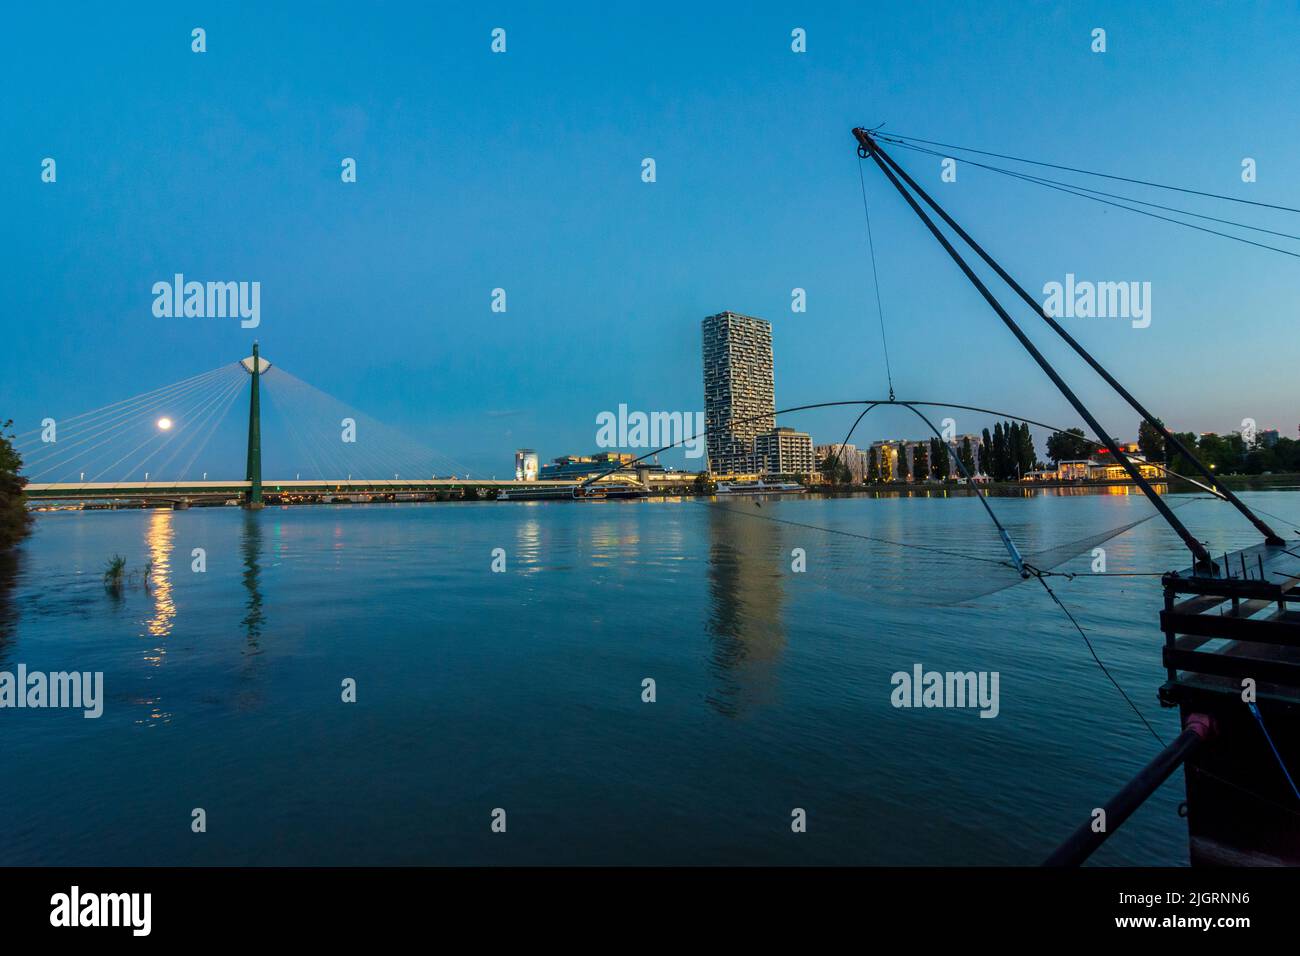 Viena, Viena: río Donau (Danubio), barco Daubel con red de pesca, torre de altura Marina, puente subterráneo Donaustadtbrücke, crucero, full mo Foto de stock